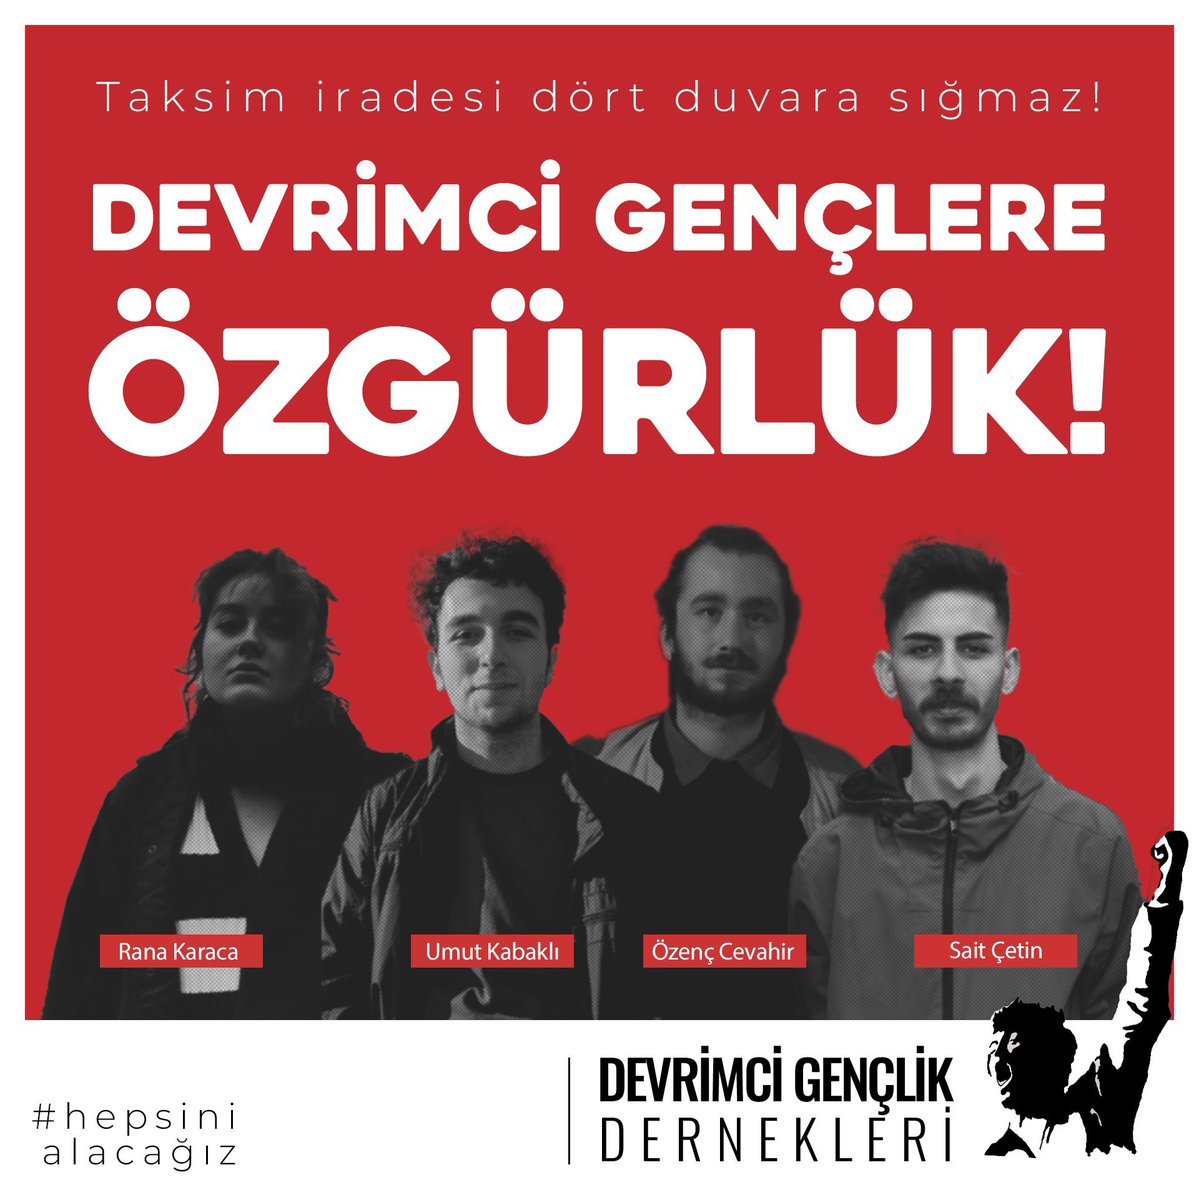 1 Mayıs alanı Taksim Meydanı'dır dediği için tutuklanan yoldaşlarımızdan da Taksim irademizden de vazgeçmiyoruz

#HepsiniAlacağız
#TaksimiÖzgürBırak